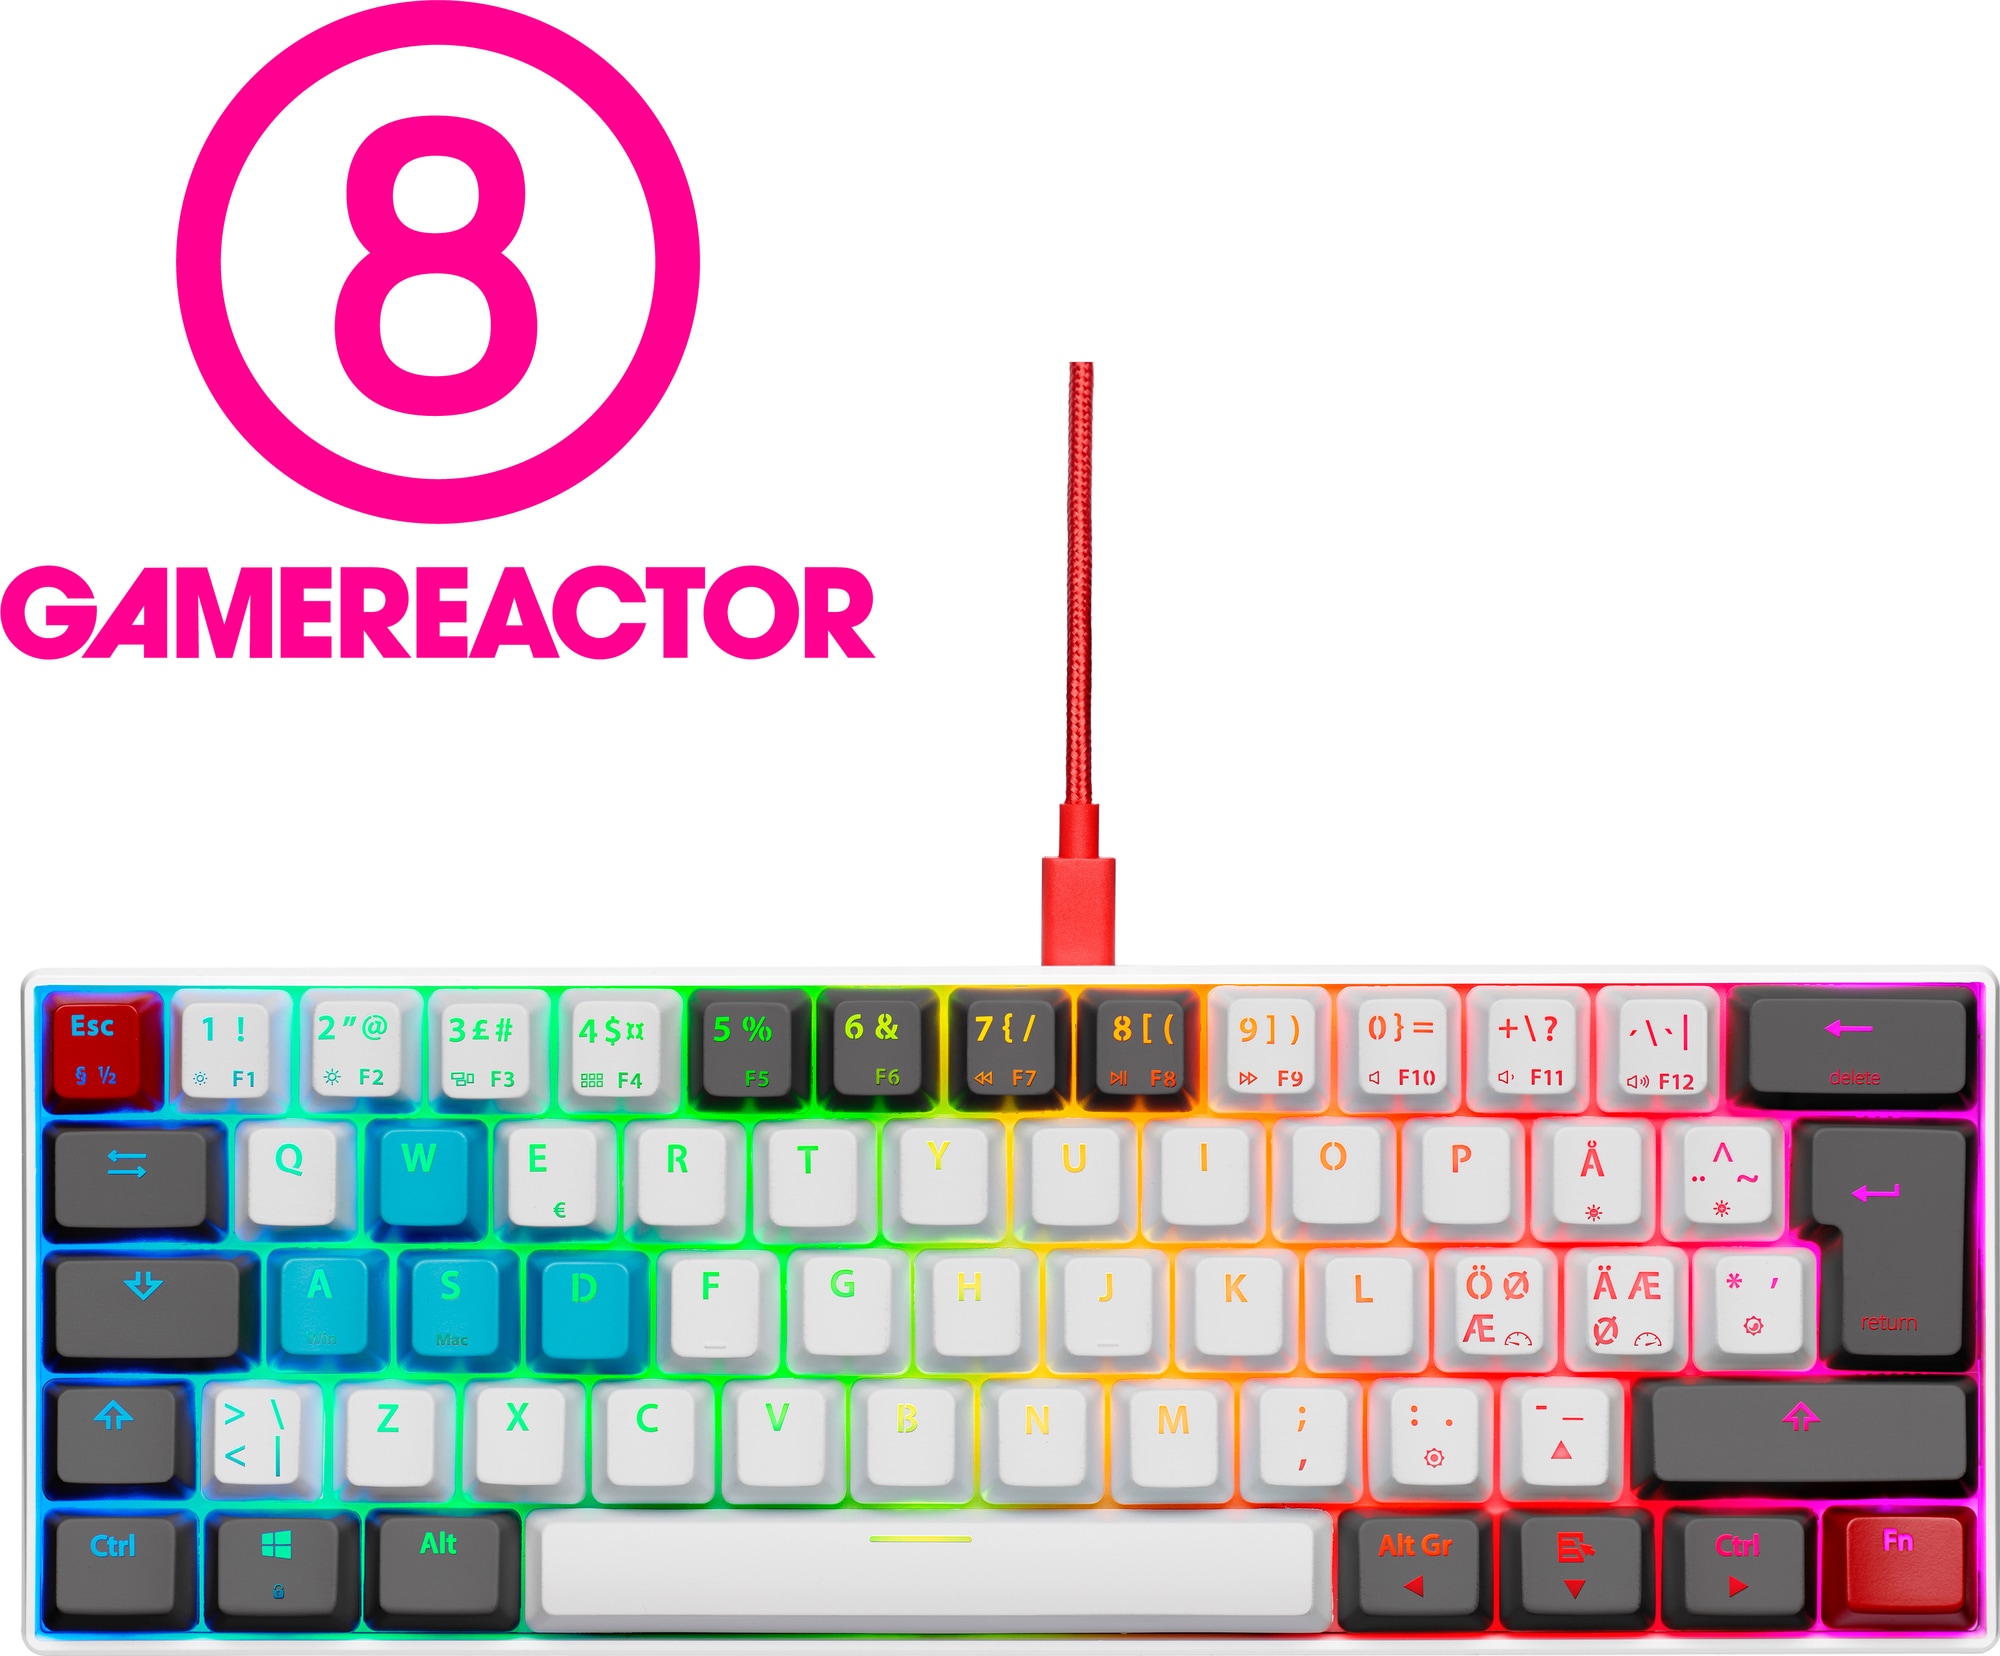 NOS C-450 Mini PRO RGB tastatur (Tilt) | Elgiganten